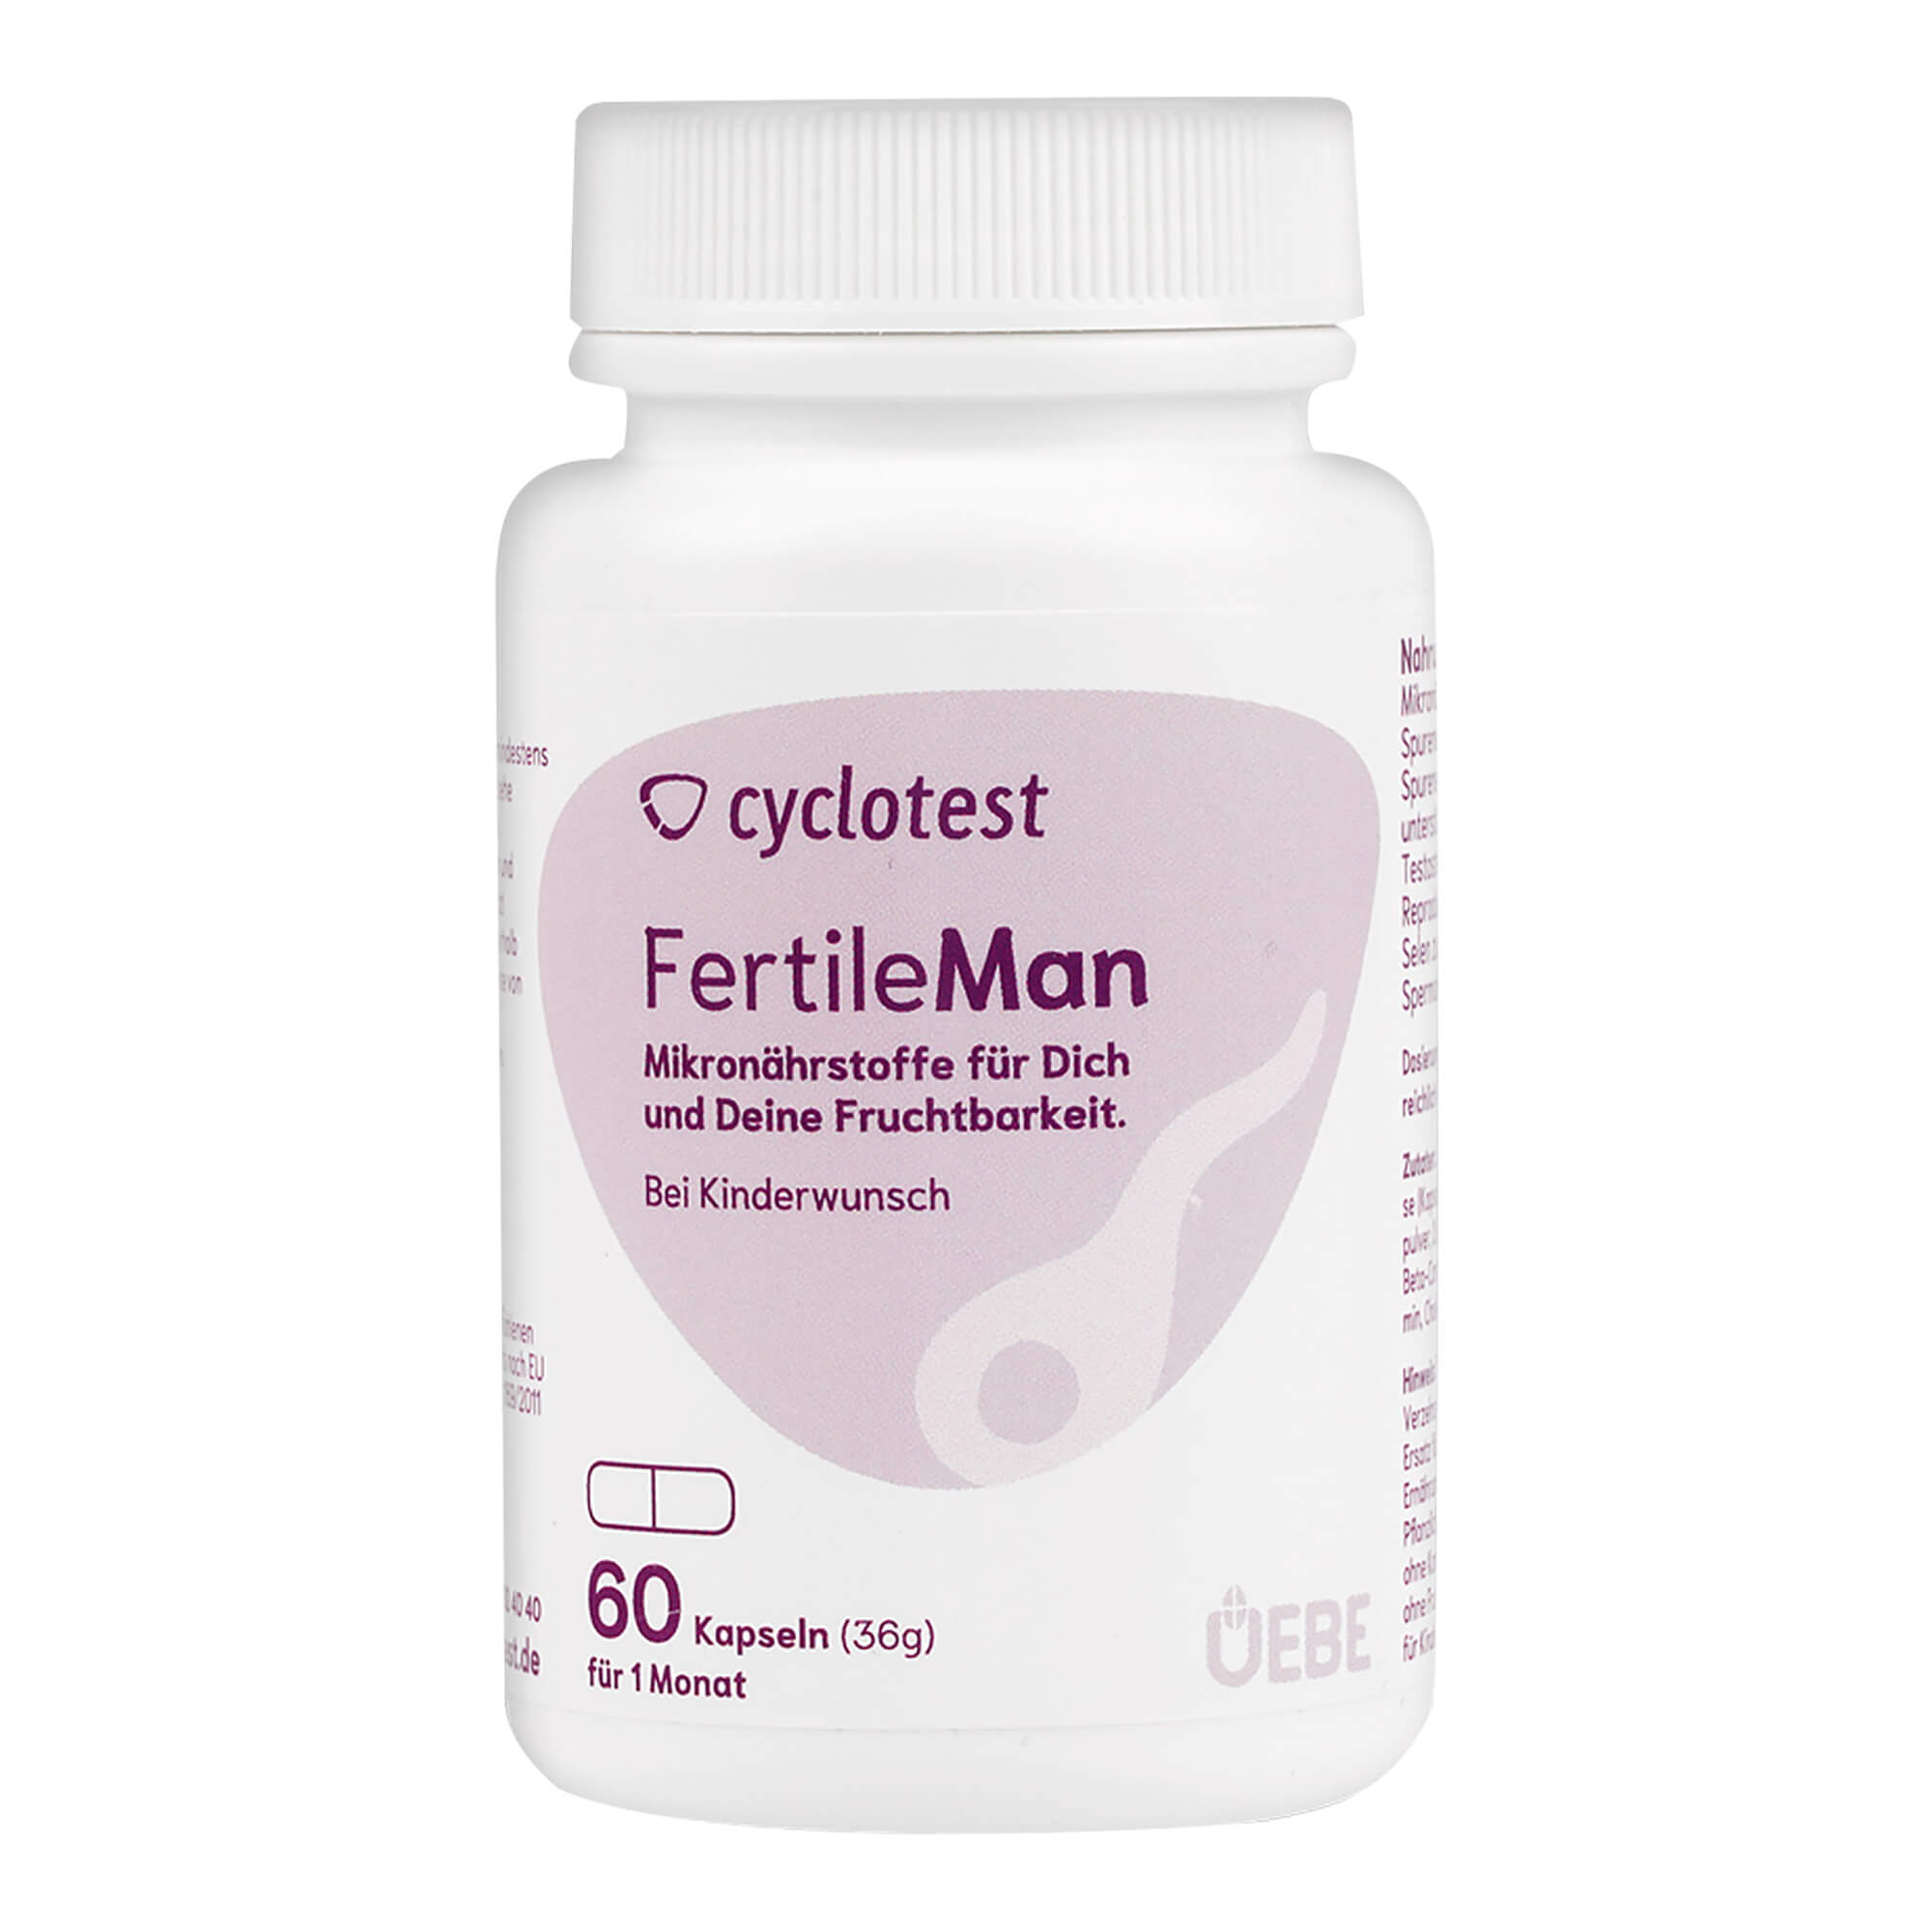 Für eine verbesserte Spermienqualität und eine erhöhte Beweglichkeit der Samenzellen.